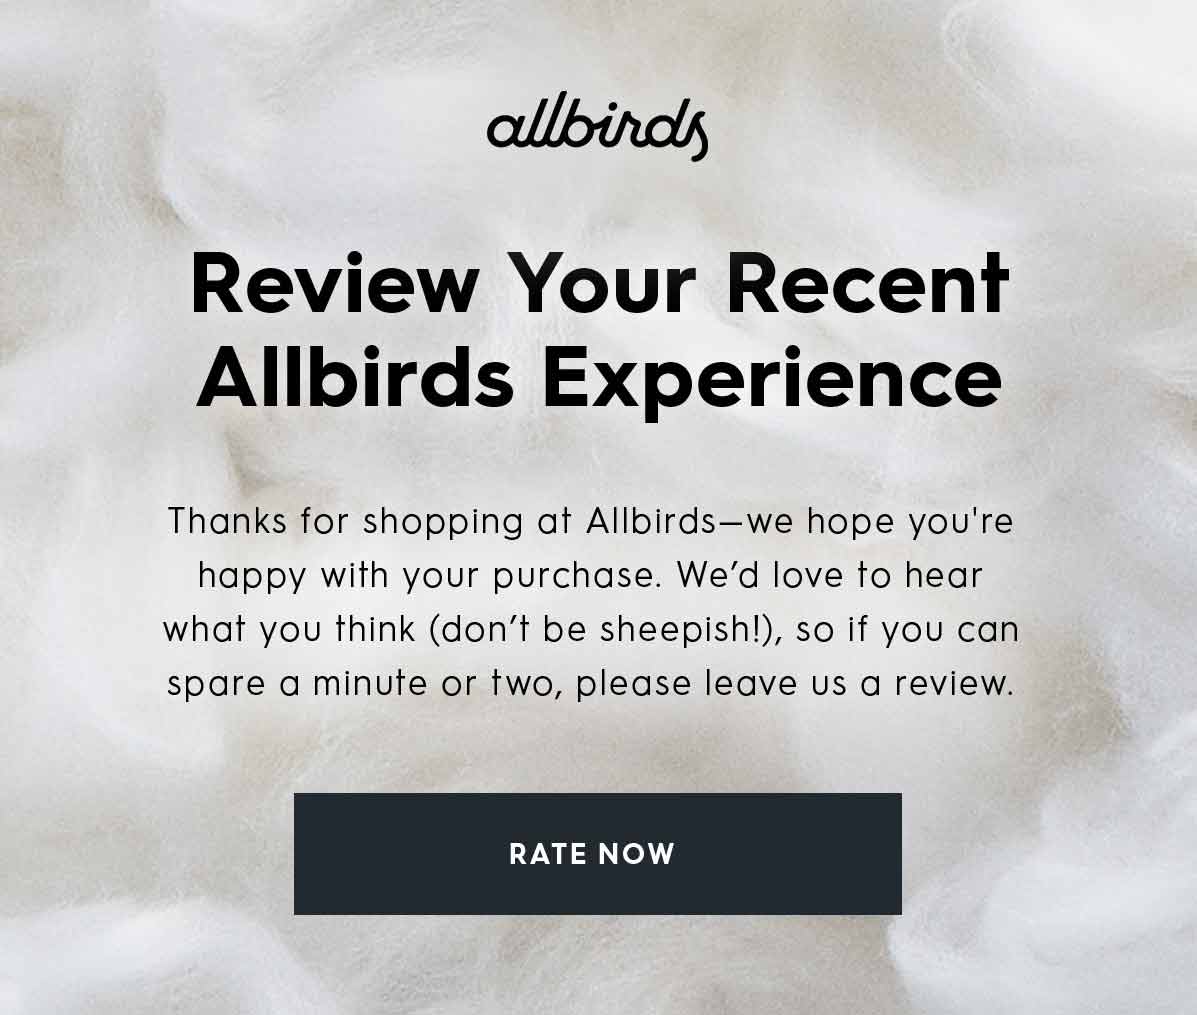 Allbirds review request